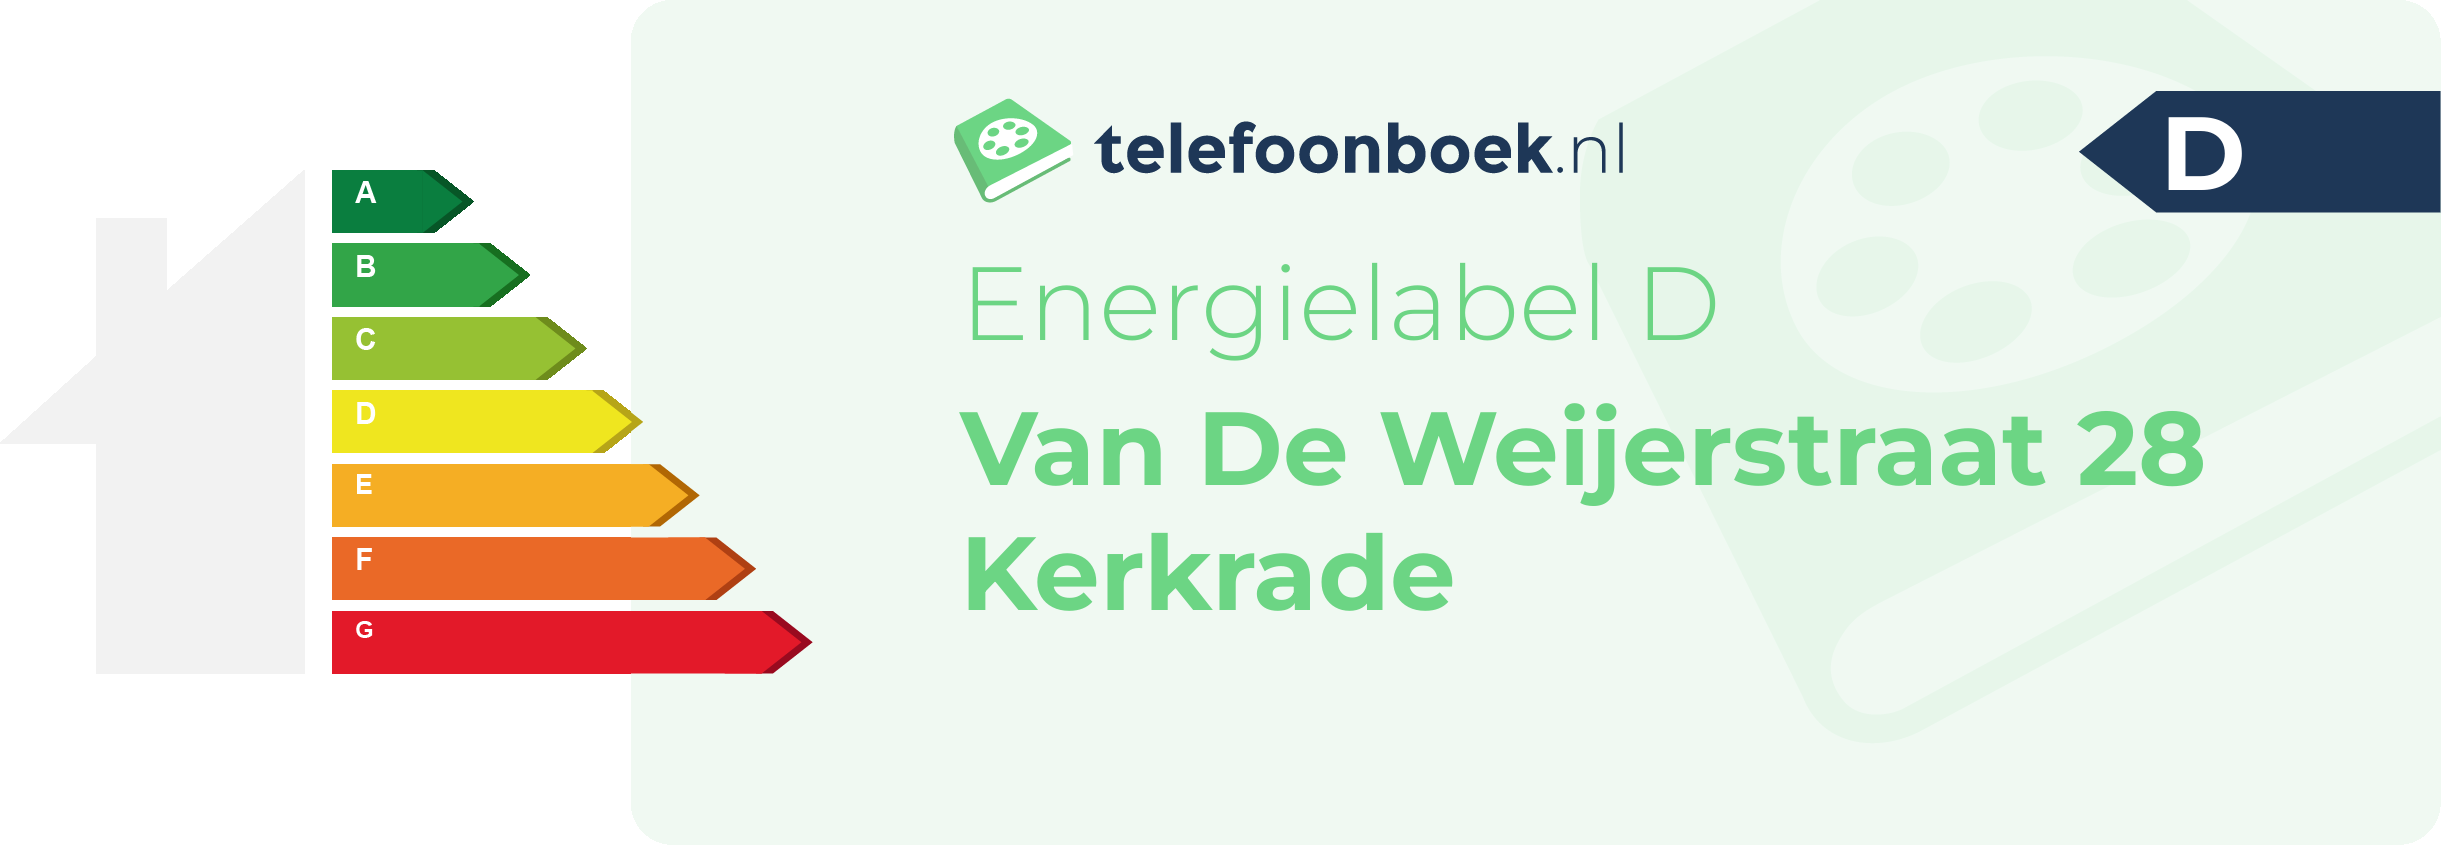 Energielabel Van De Weijerstraat 28 Kerkrade